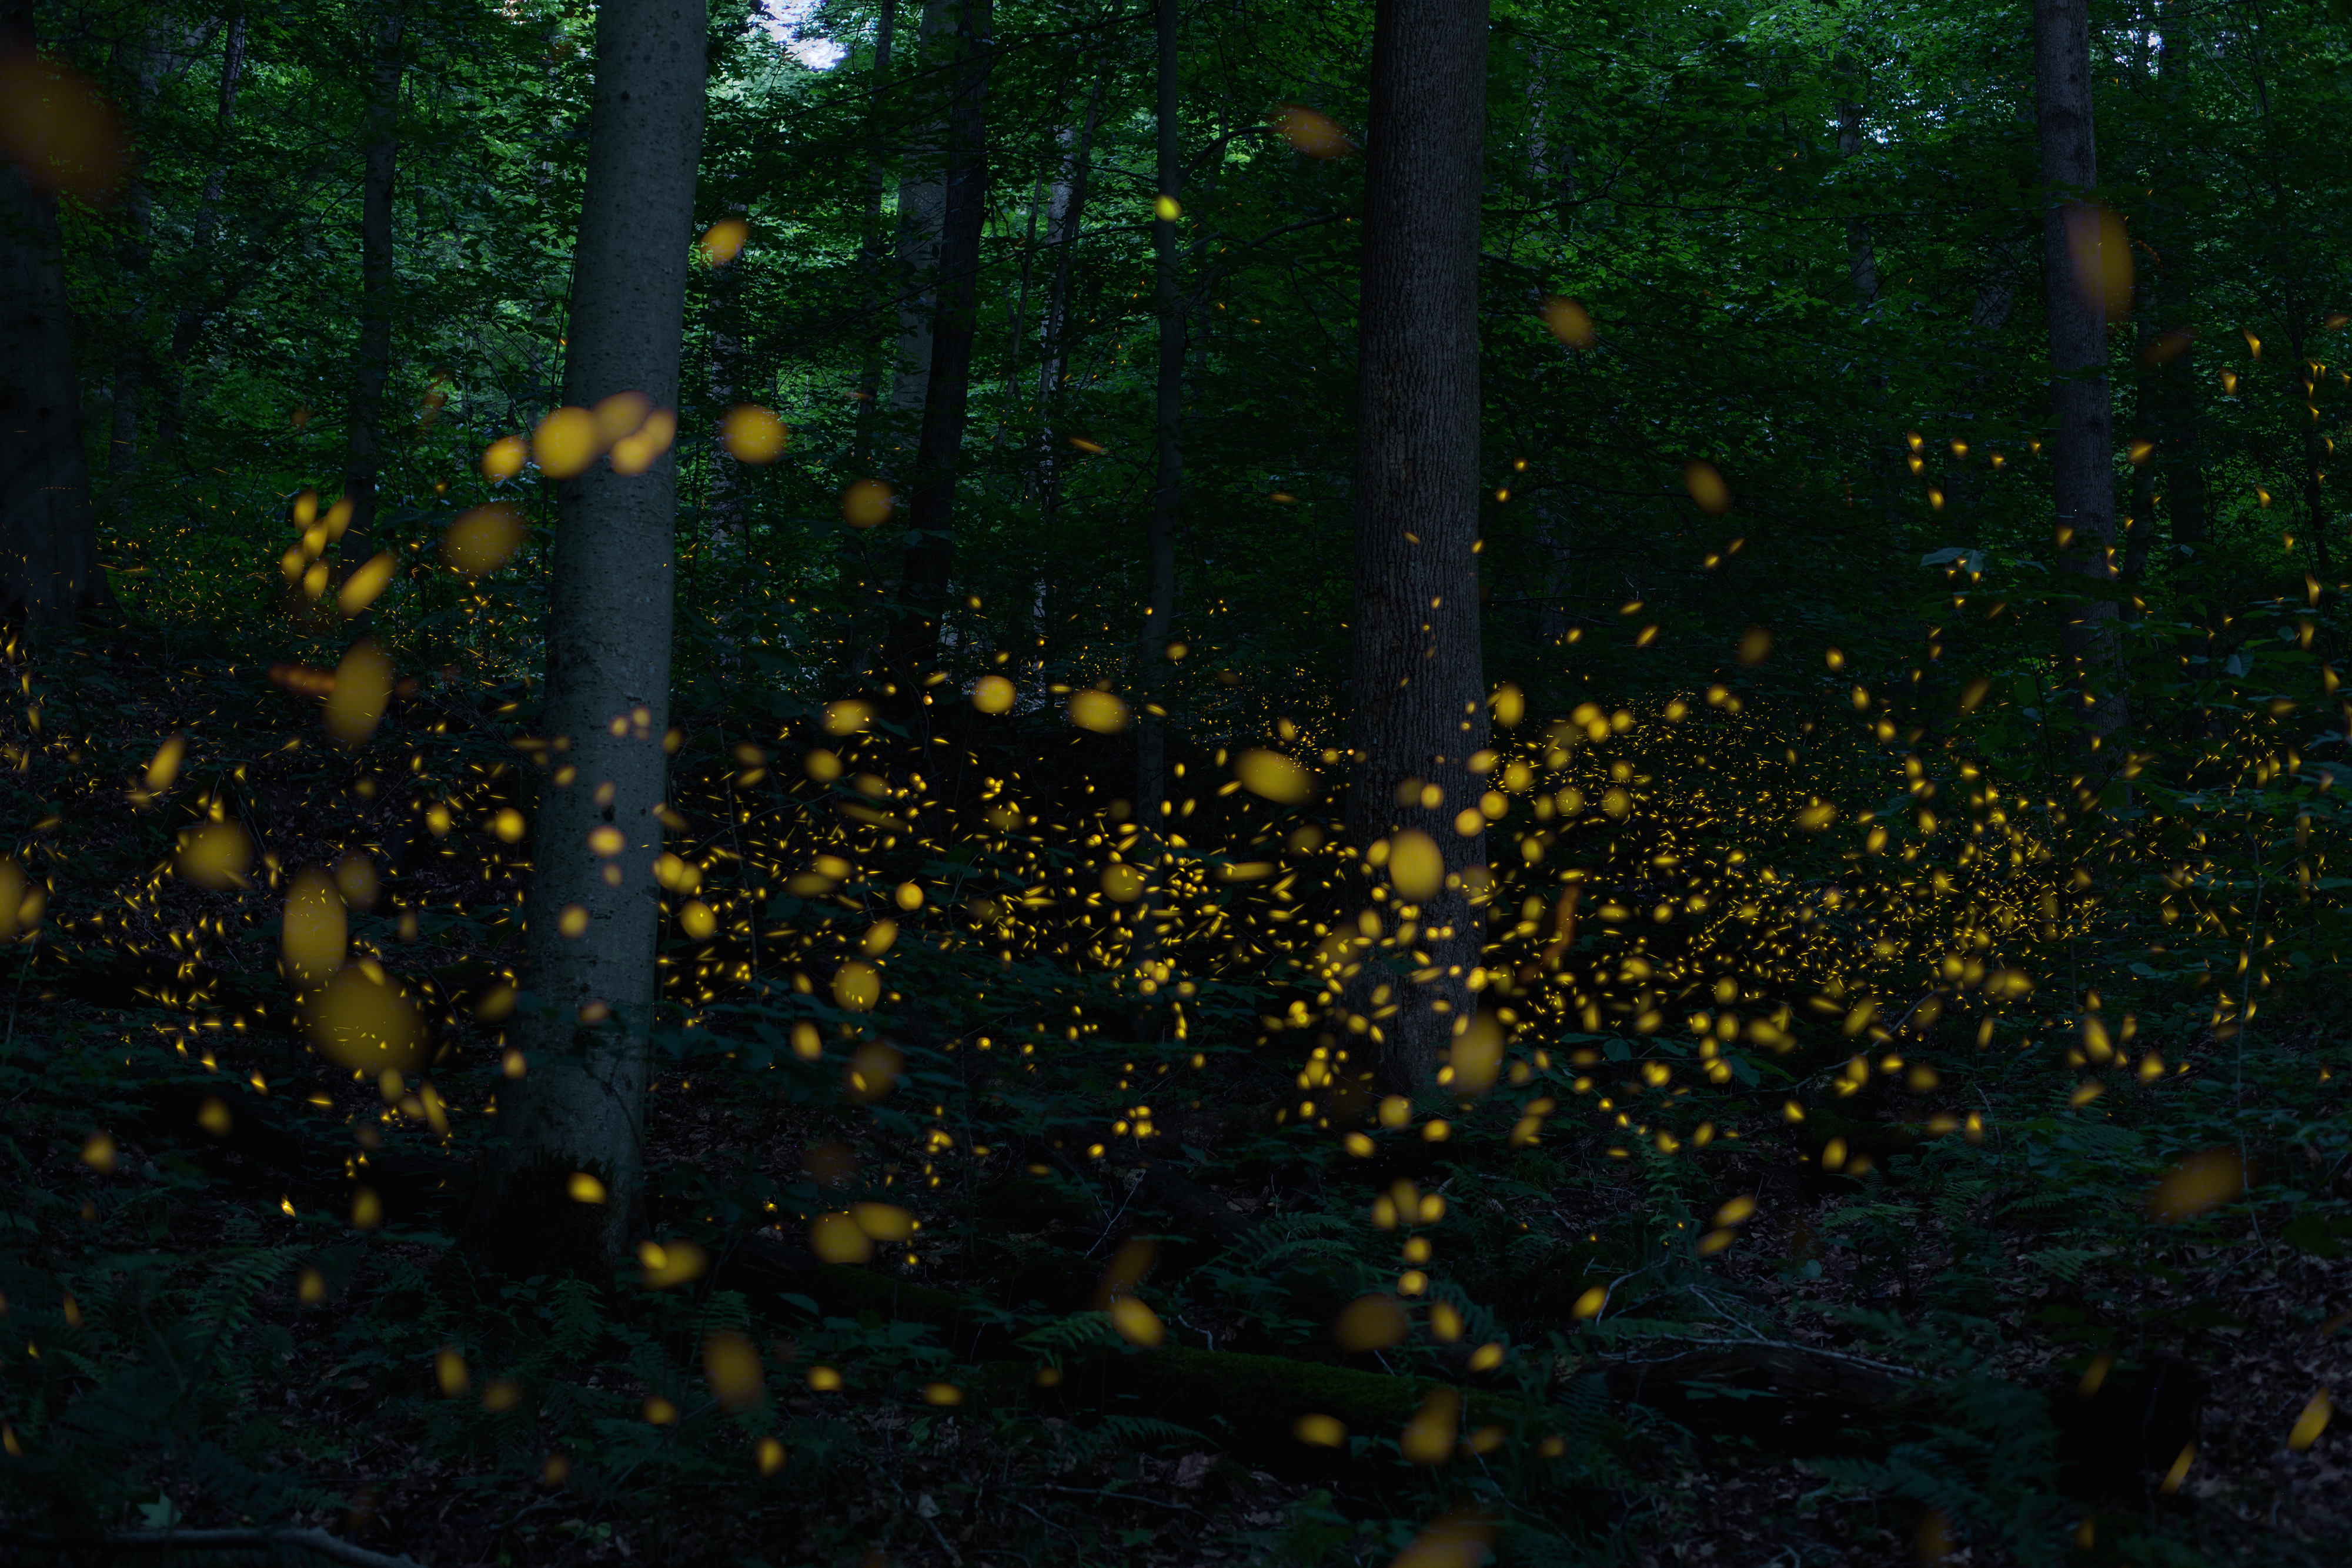 Fireflies light up a dark forest.